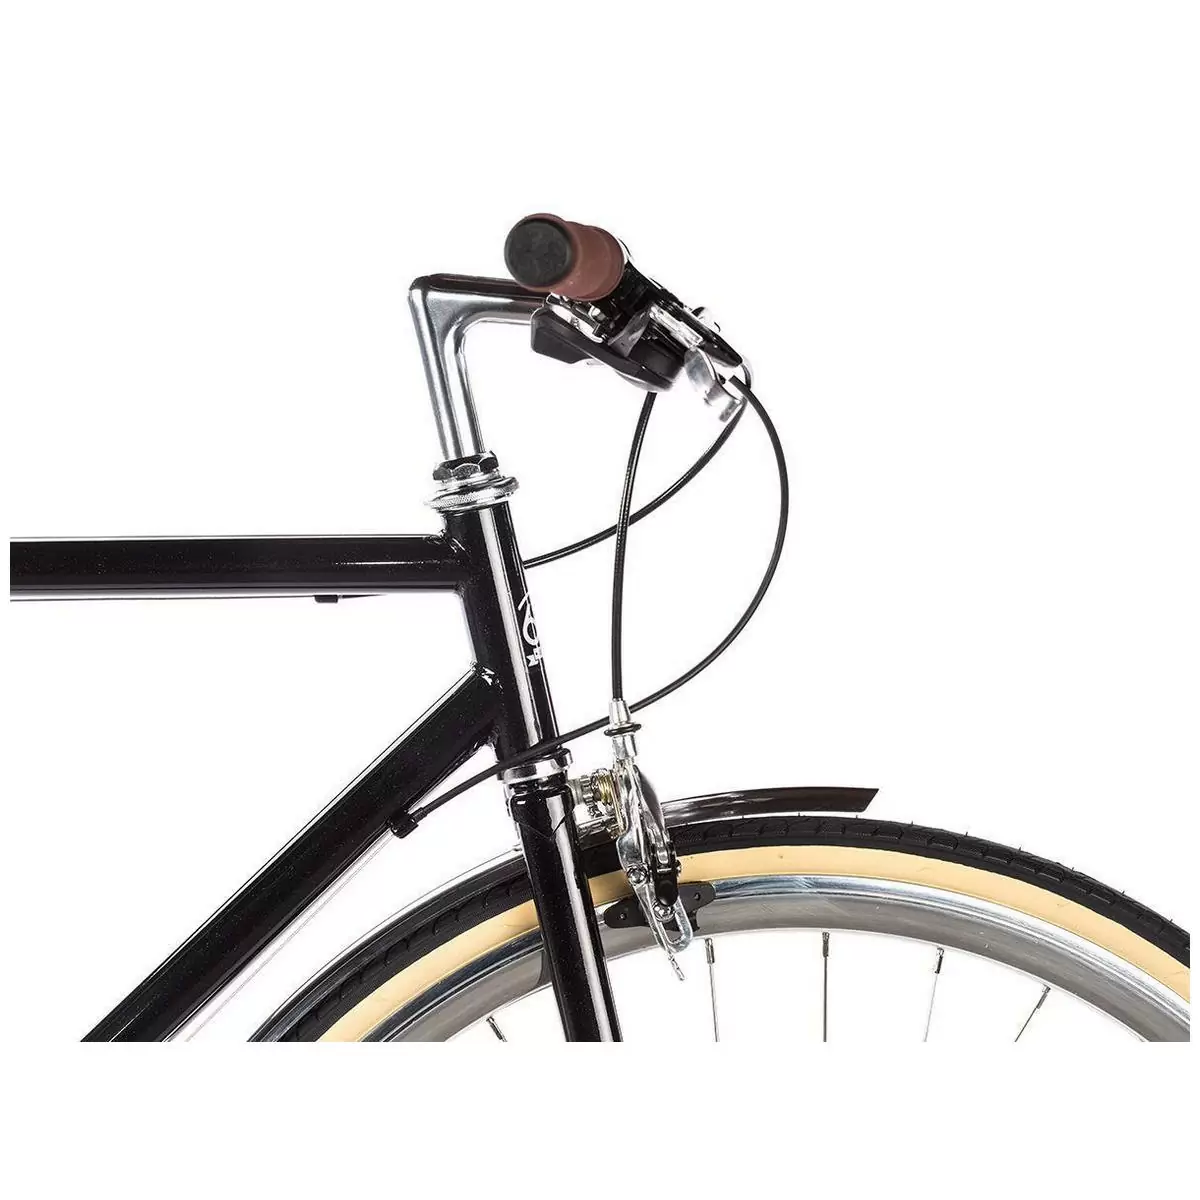 Bicicleta urbana ODYSSEY 8spd Delano preta média 54cm #3